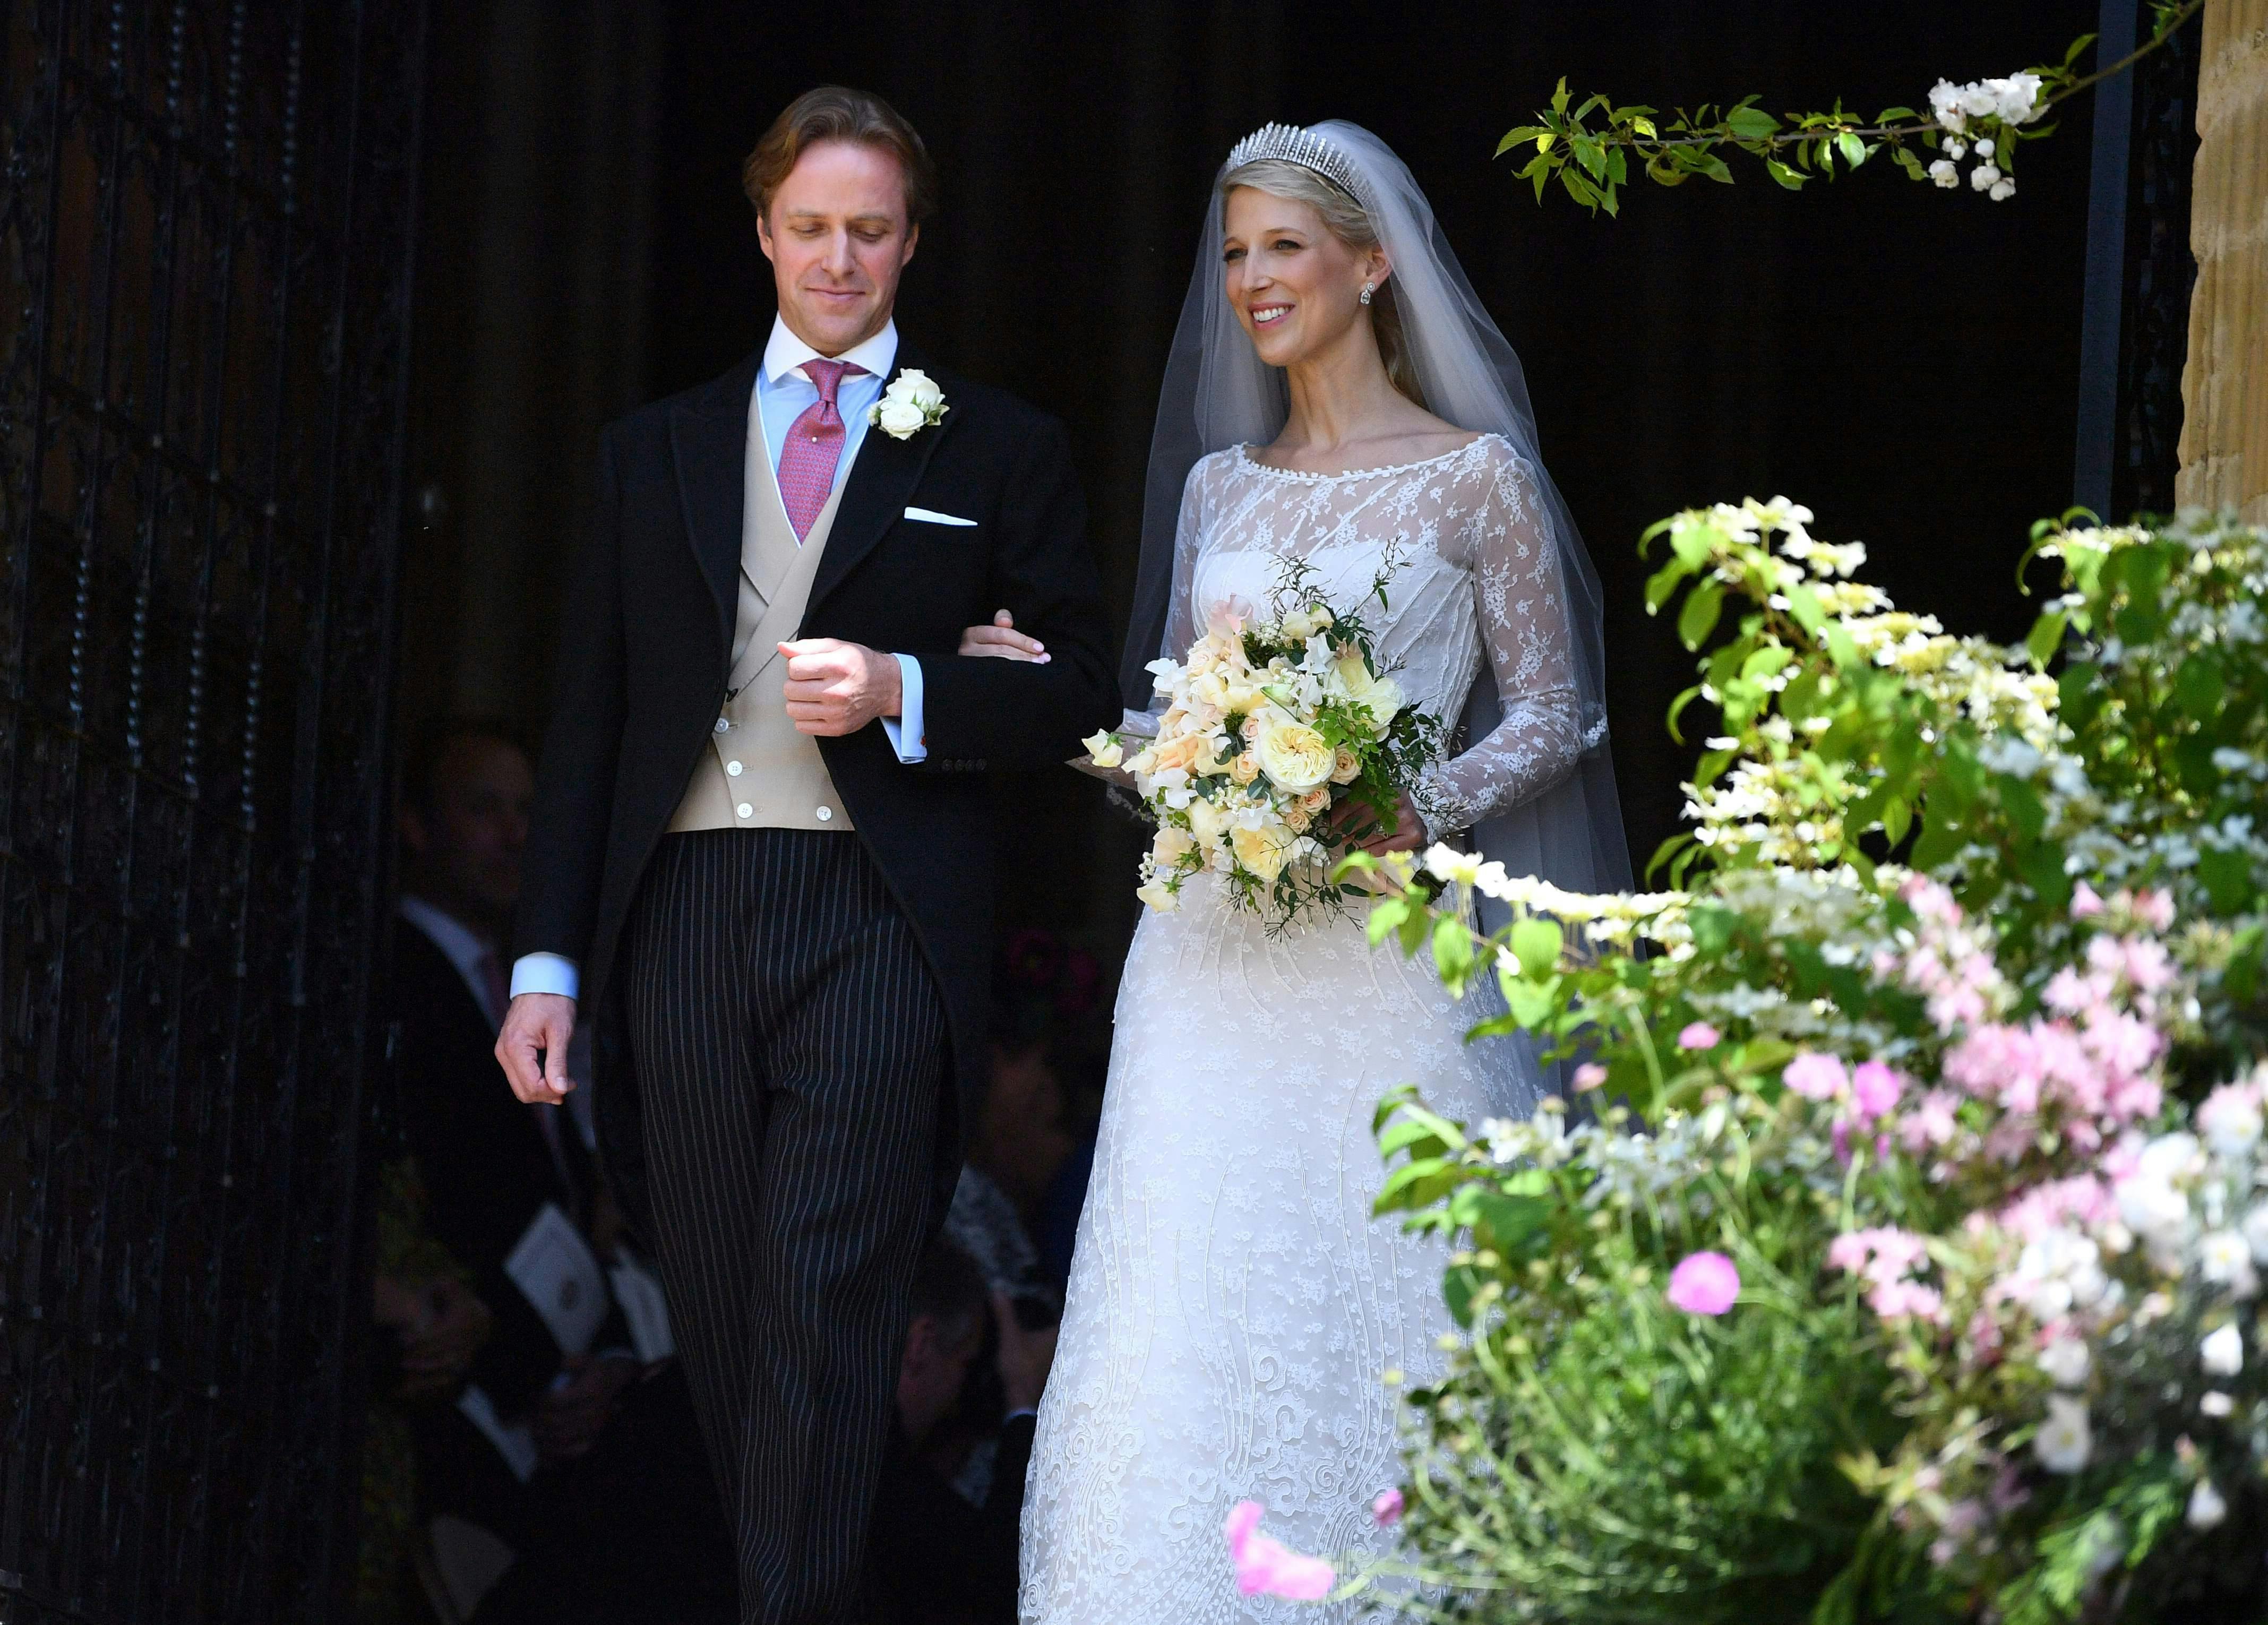 Parret blev gift i St. George's Chapel ved Windsor Castle i 2019. 